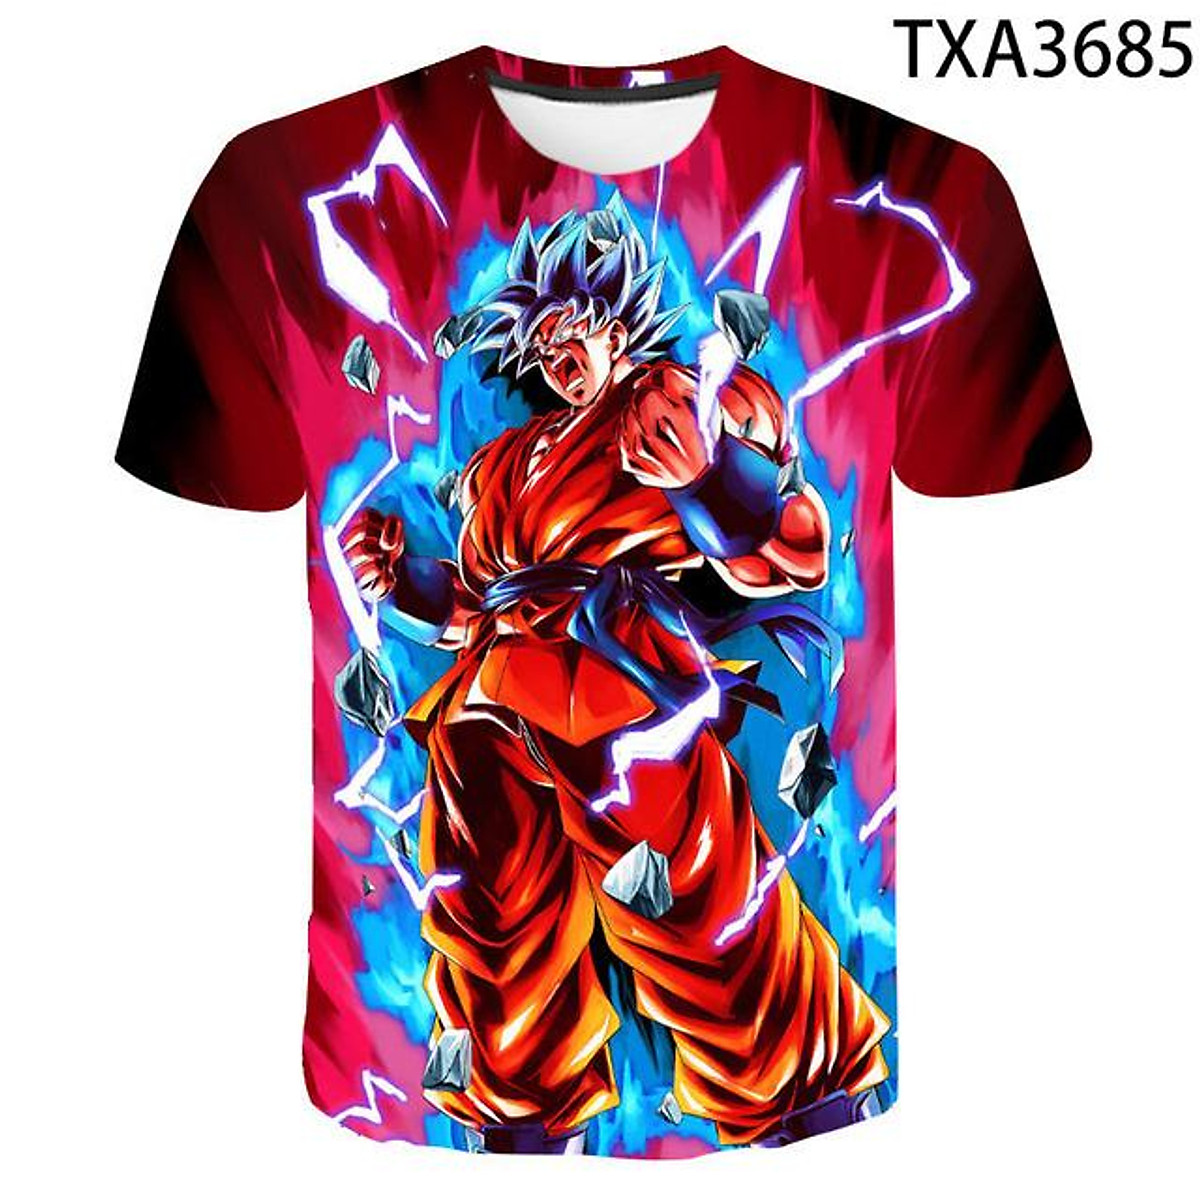 Với Goku hoạt hình Anime 2024, bạn sẽ được chứng kiến một người hùng siêu năng lực đầy sức mạnh và quyết tâm chiến đấu chống lại các thế lực đen tối để bảo vệ thế giới.